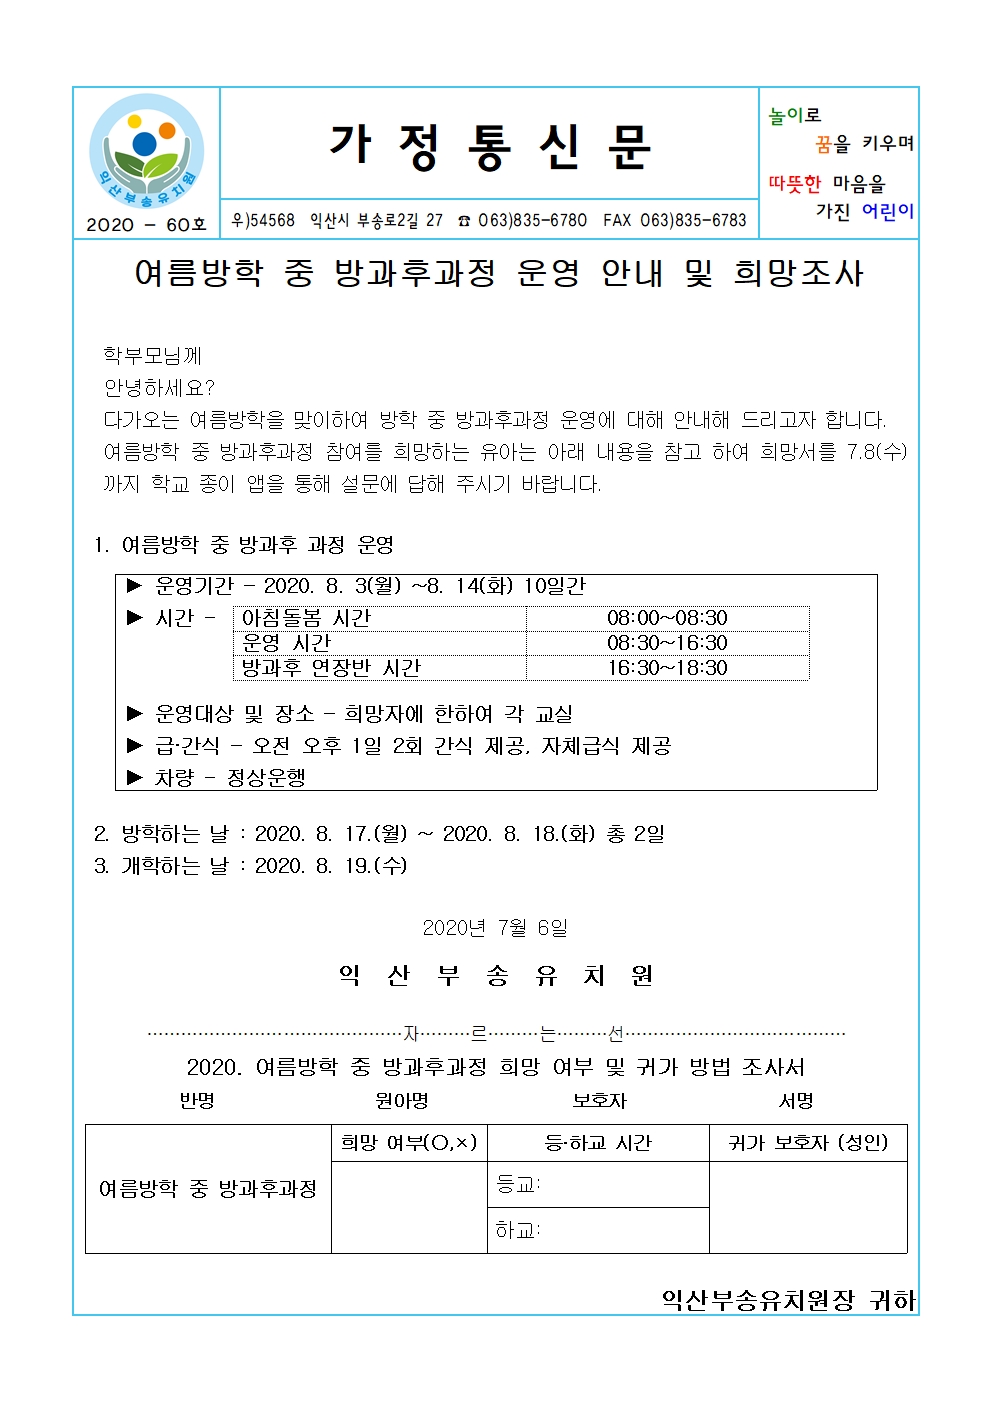 2020-60호 여름방학 중 방과후과정 운영 안내 및 희망조사(20.07.06.)